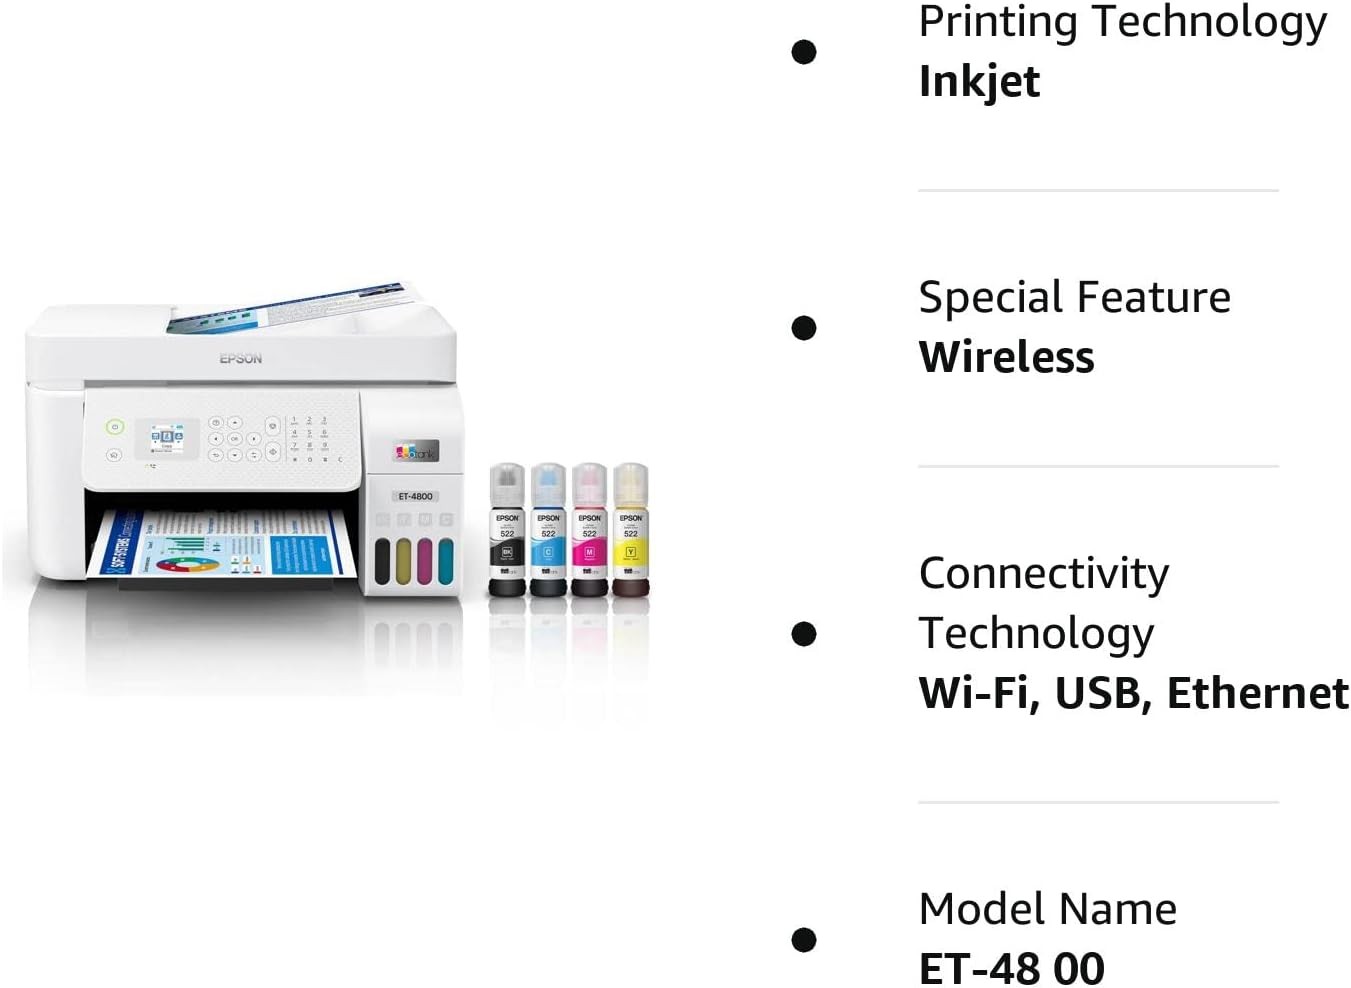 impresoras y scanners - Epson EcoTank ET-4800 Impresora Multifuncional, ADF y Fax, WIFI, USB, Enthernet